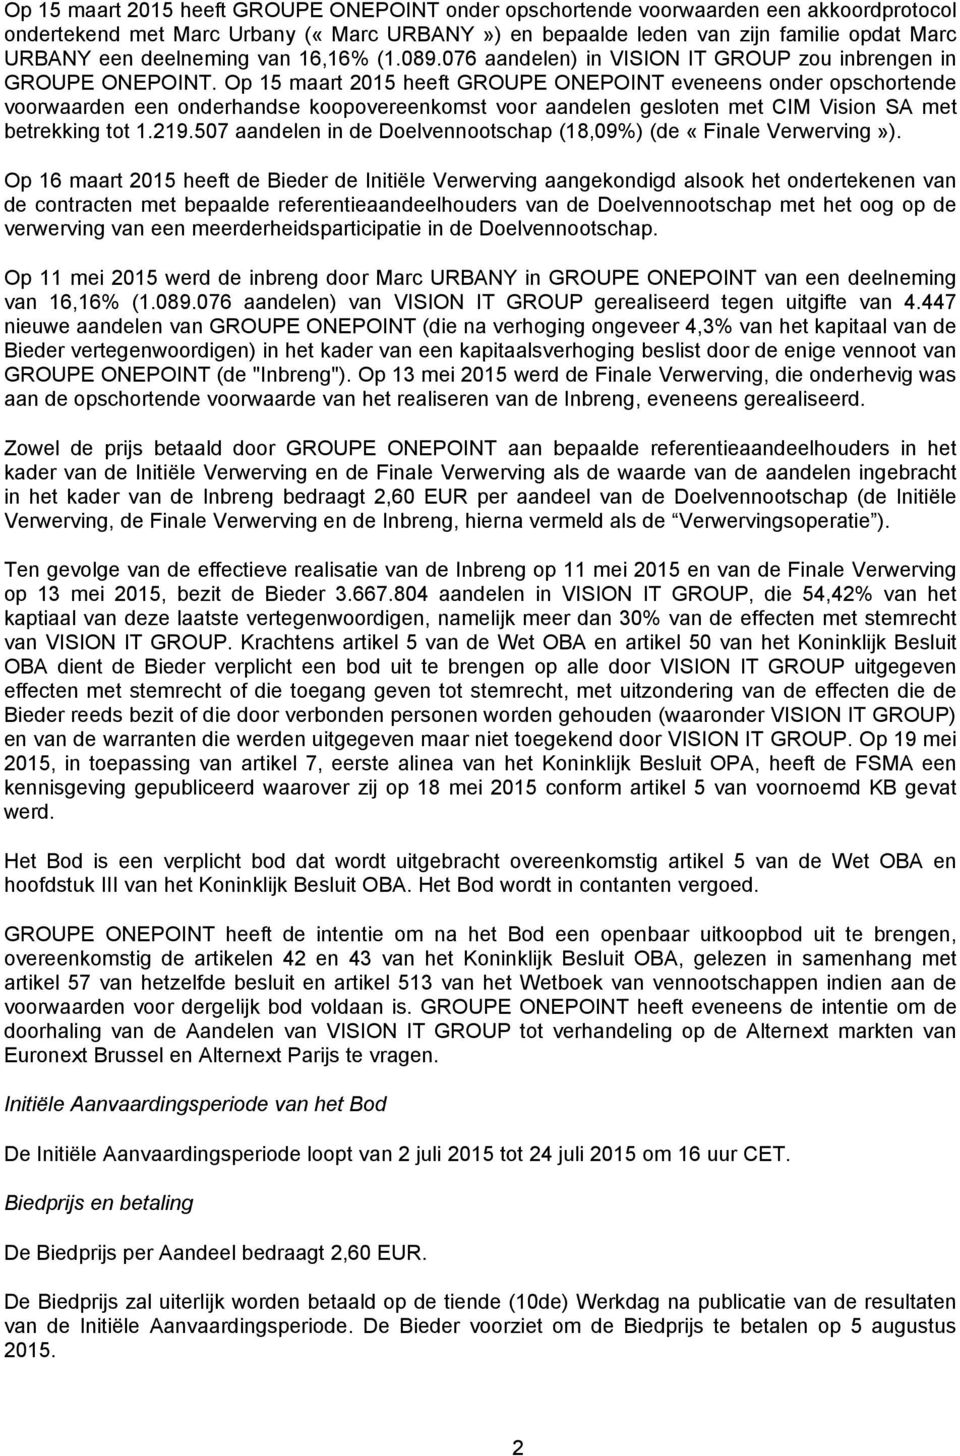 Op 15 maart 2015 heeft GROUPE ONEPOINT eveneens onder opschortende voorwaarden een onderhandse koopovereenkomst voor aandelen gesloten met CIM Vision SA met betrekking tot 1.219.